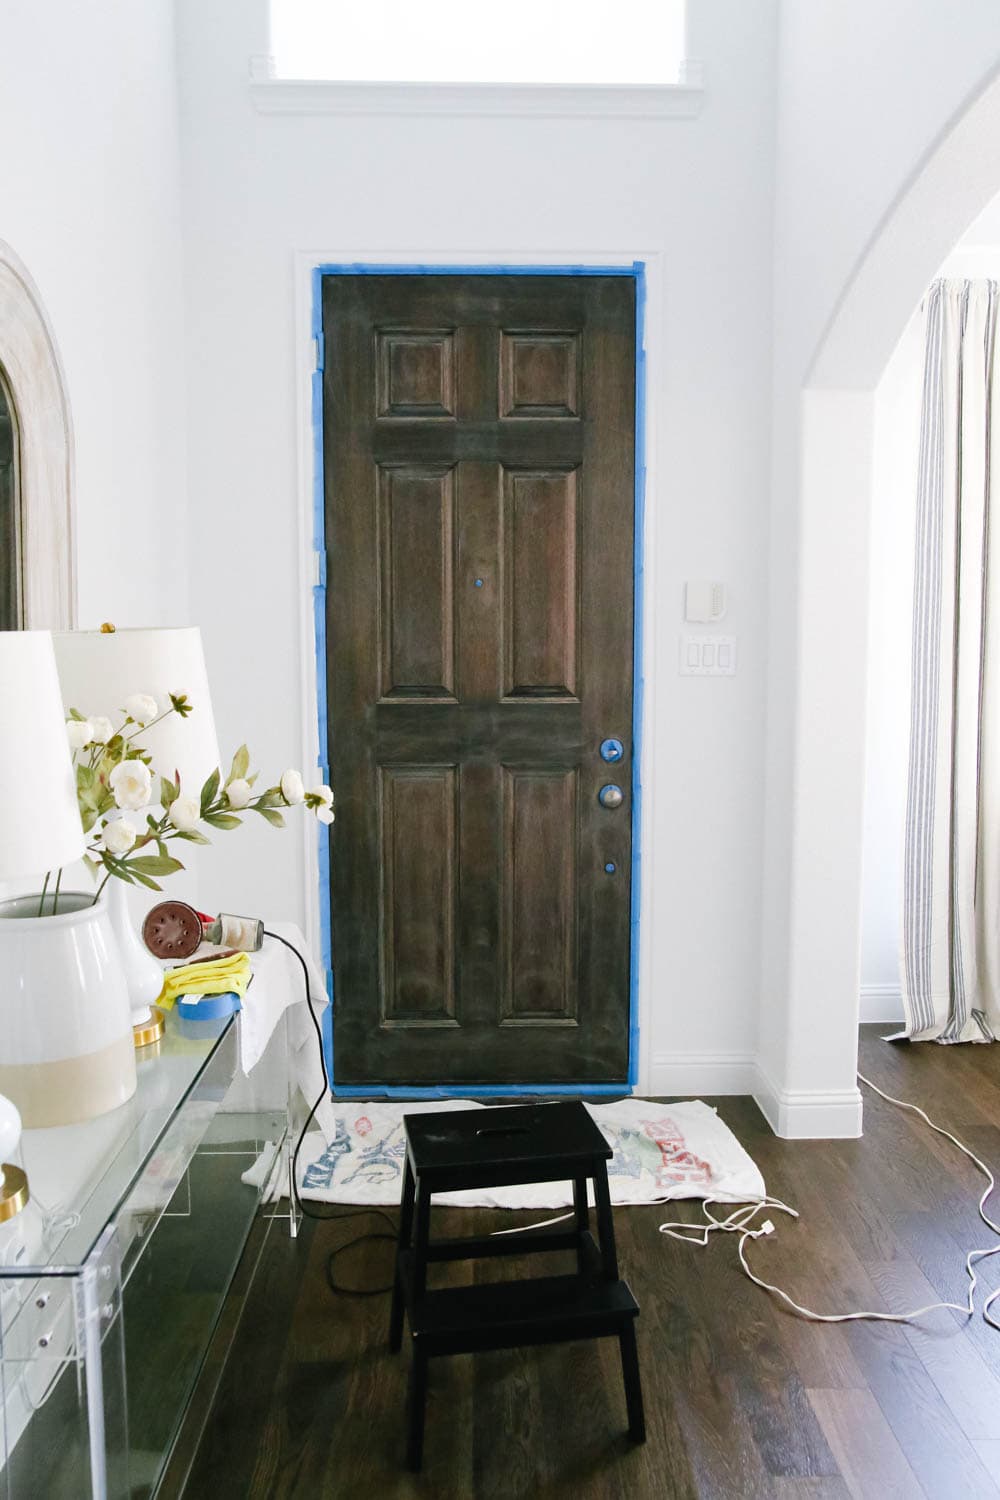 Interior Painted Front Door Makeover - Easy Entryway Update